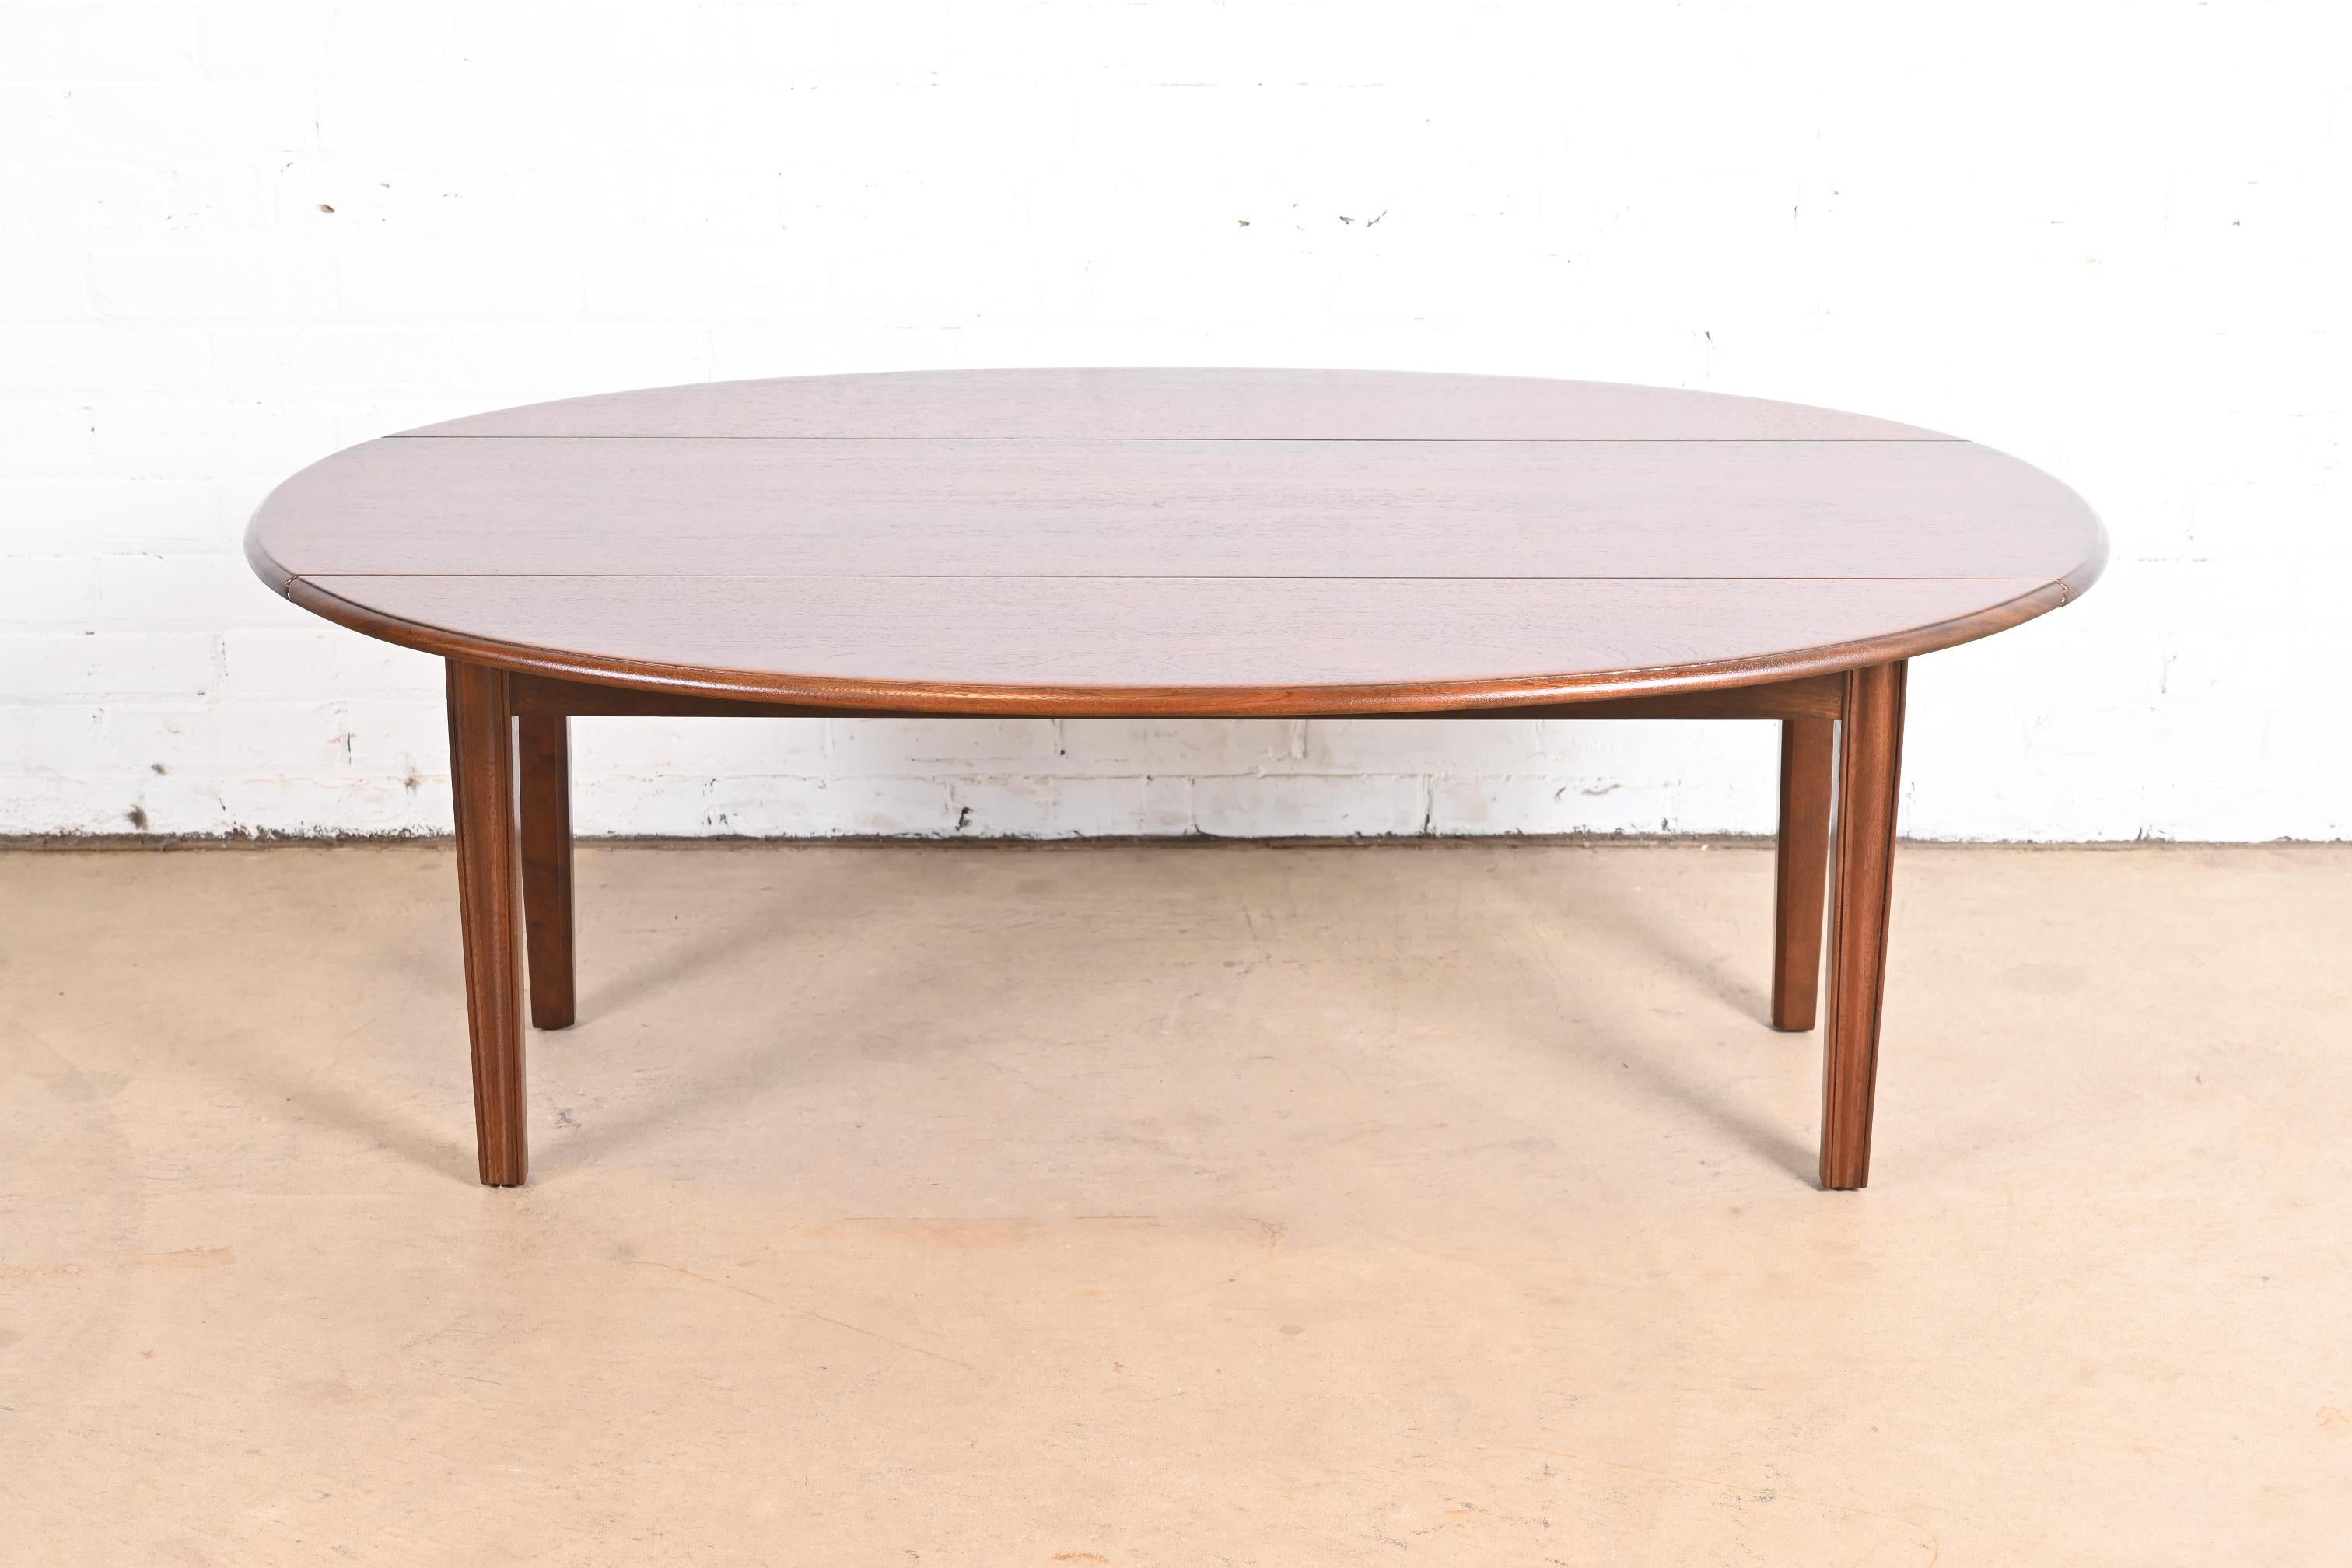 Une belle table basse à abattant en acajou de style colonial américain.

Par Kittinger

États-Unis, milieu du 20e siècle

Mesures : 54